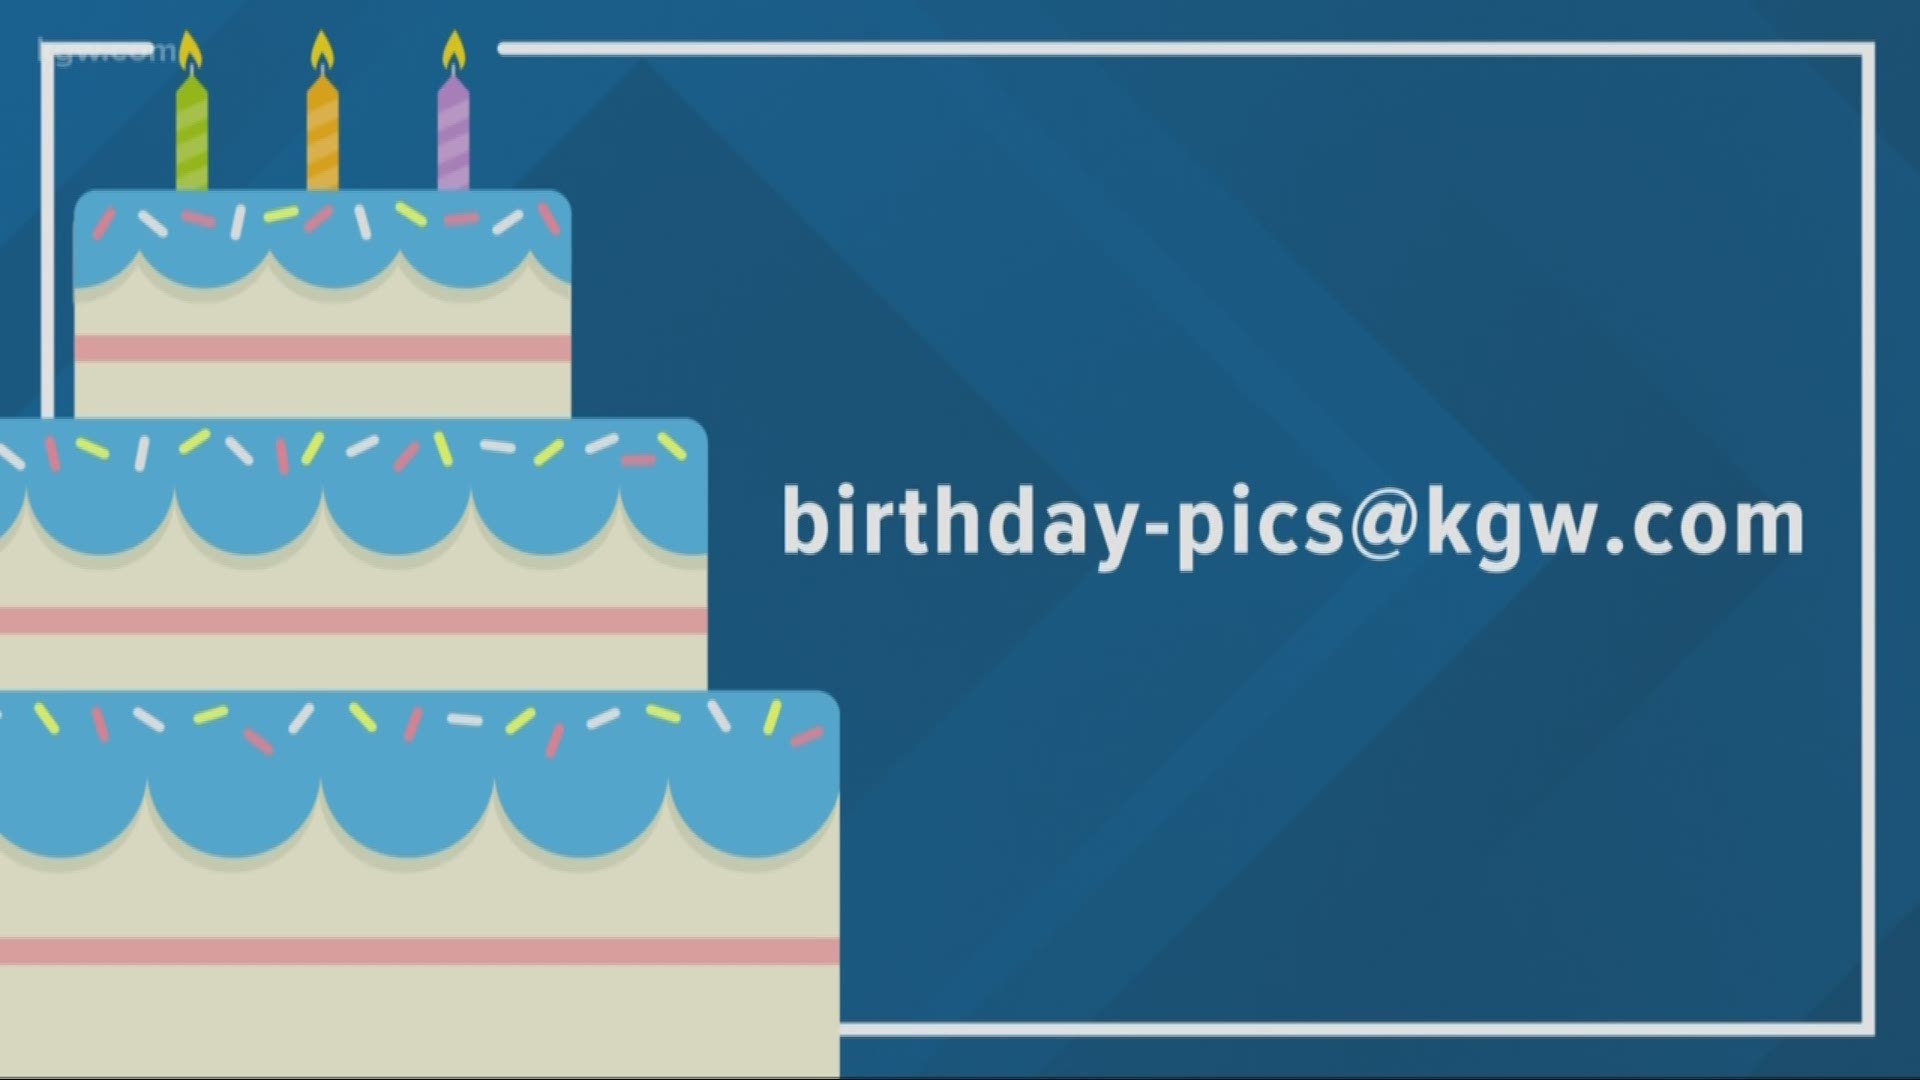 KGW viewer birthdays: 6-21-19